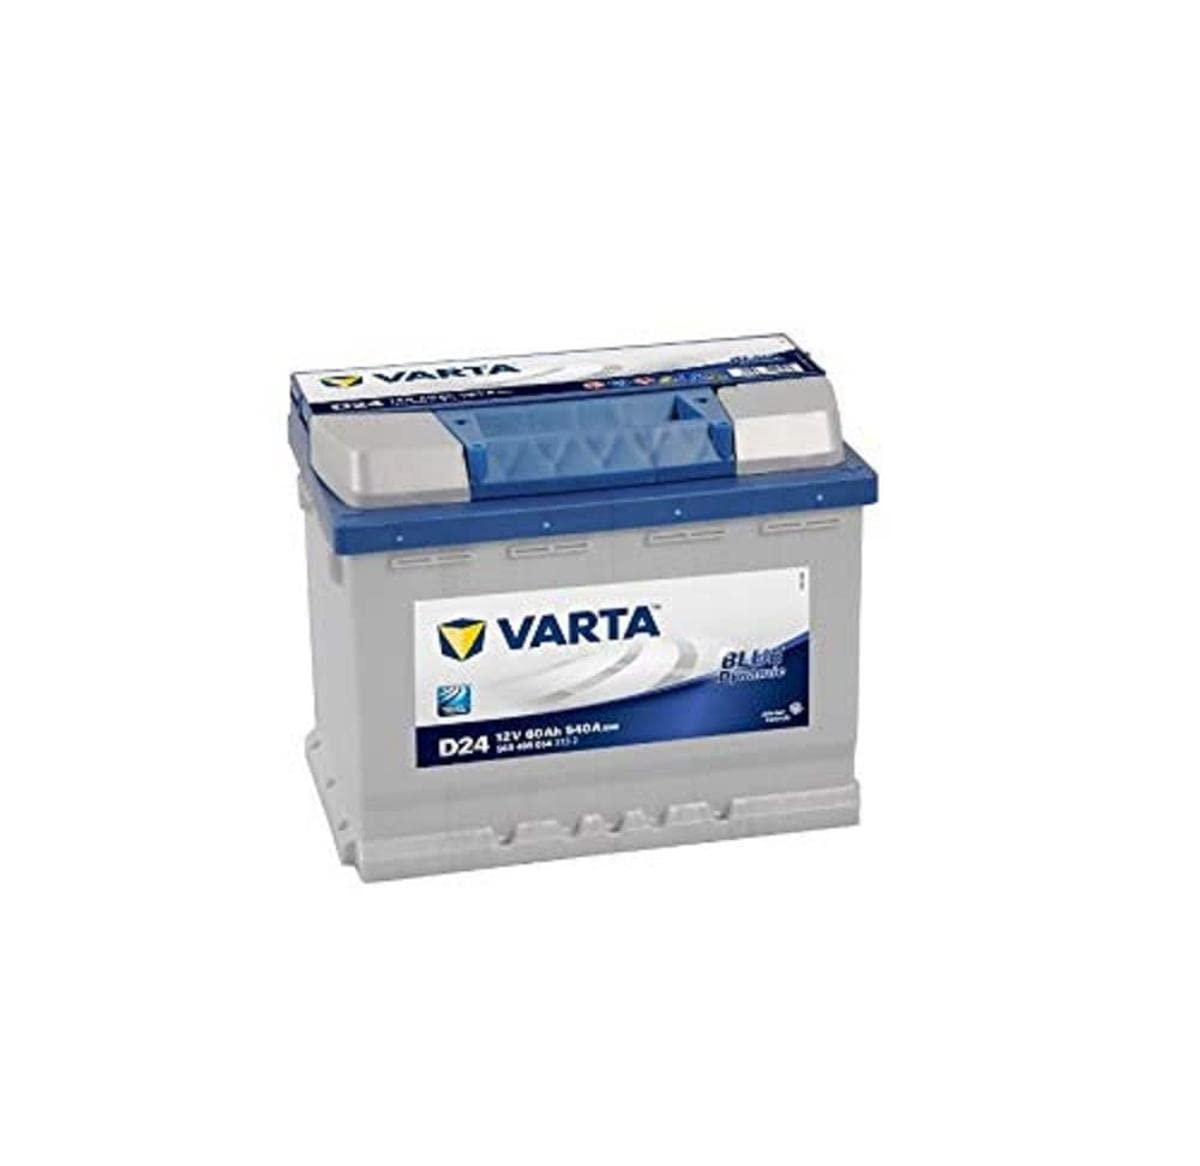 Varta D24 Blue Dynamic Starterbatterie für Passenger Car, 5604080543132 12V 60Ah 540A von Varta